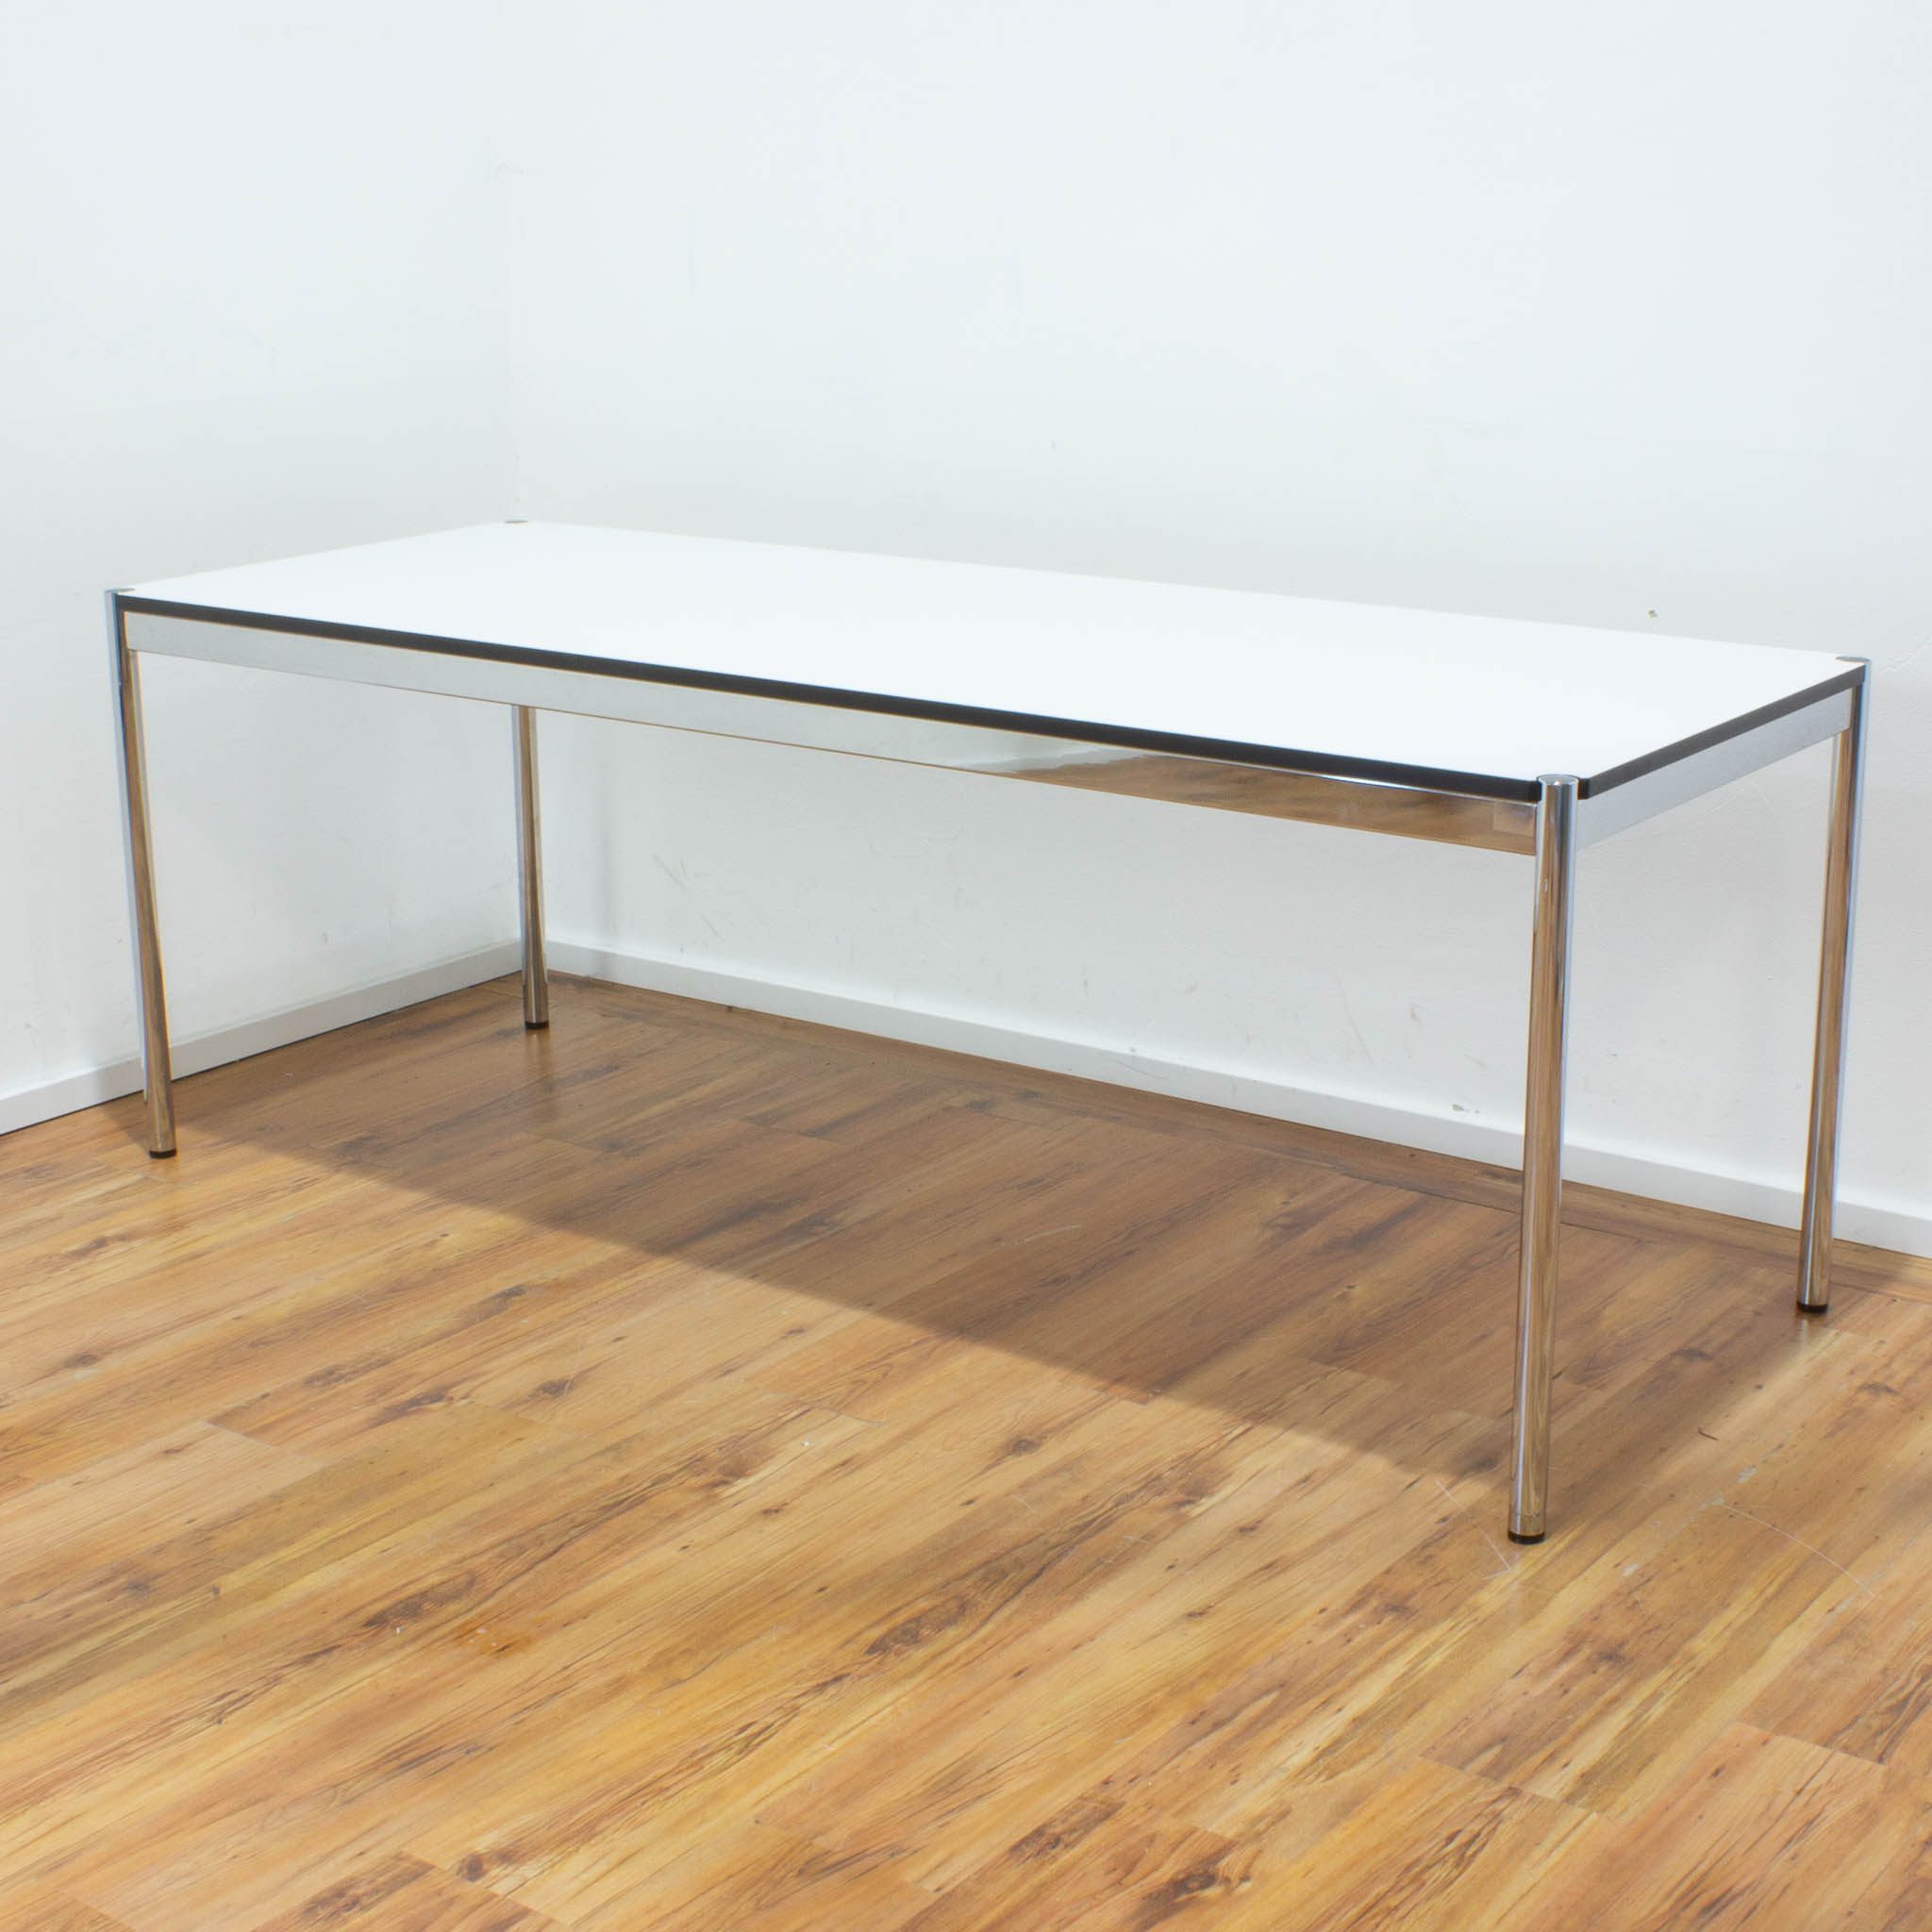 USM Haller Schreibtisch Plus 200 x 75 cm - Tischplatte weiß - Gestell 4-Fuß chrom